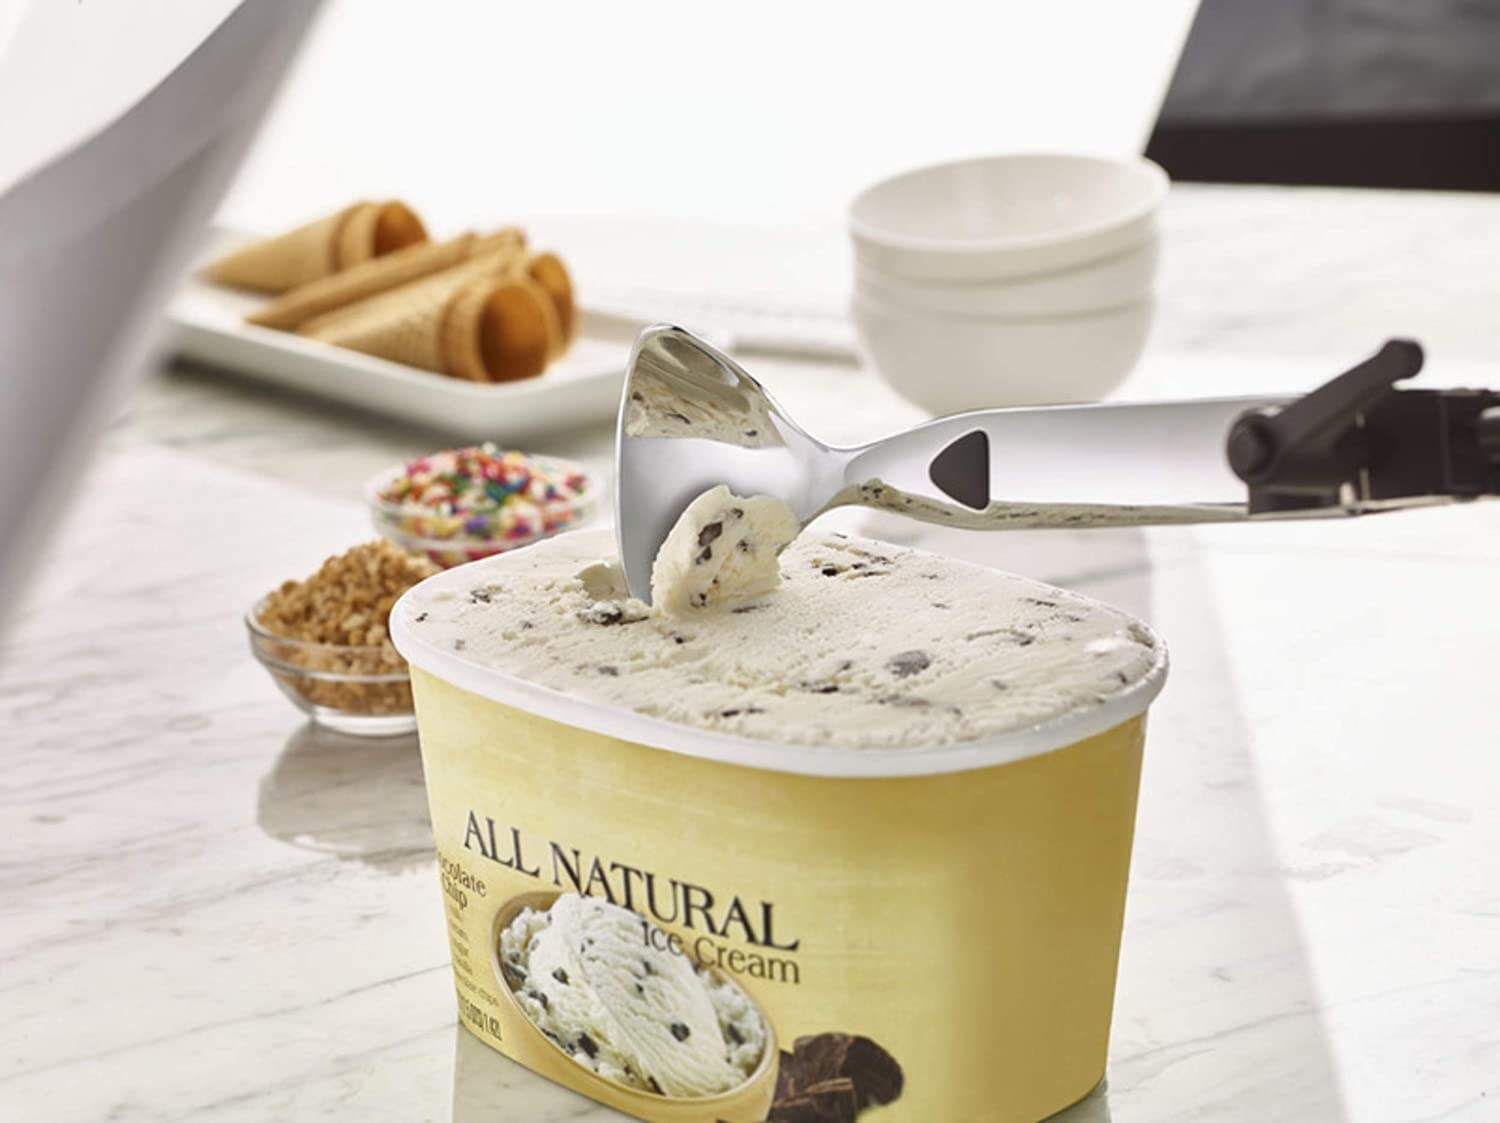 An ice cream scoop scoops up ice cream